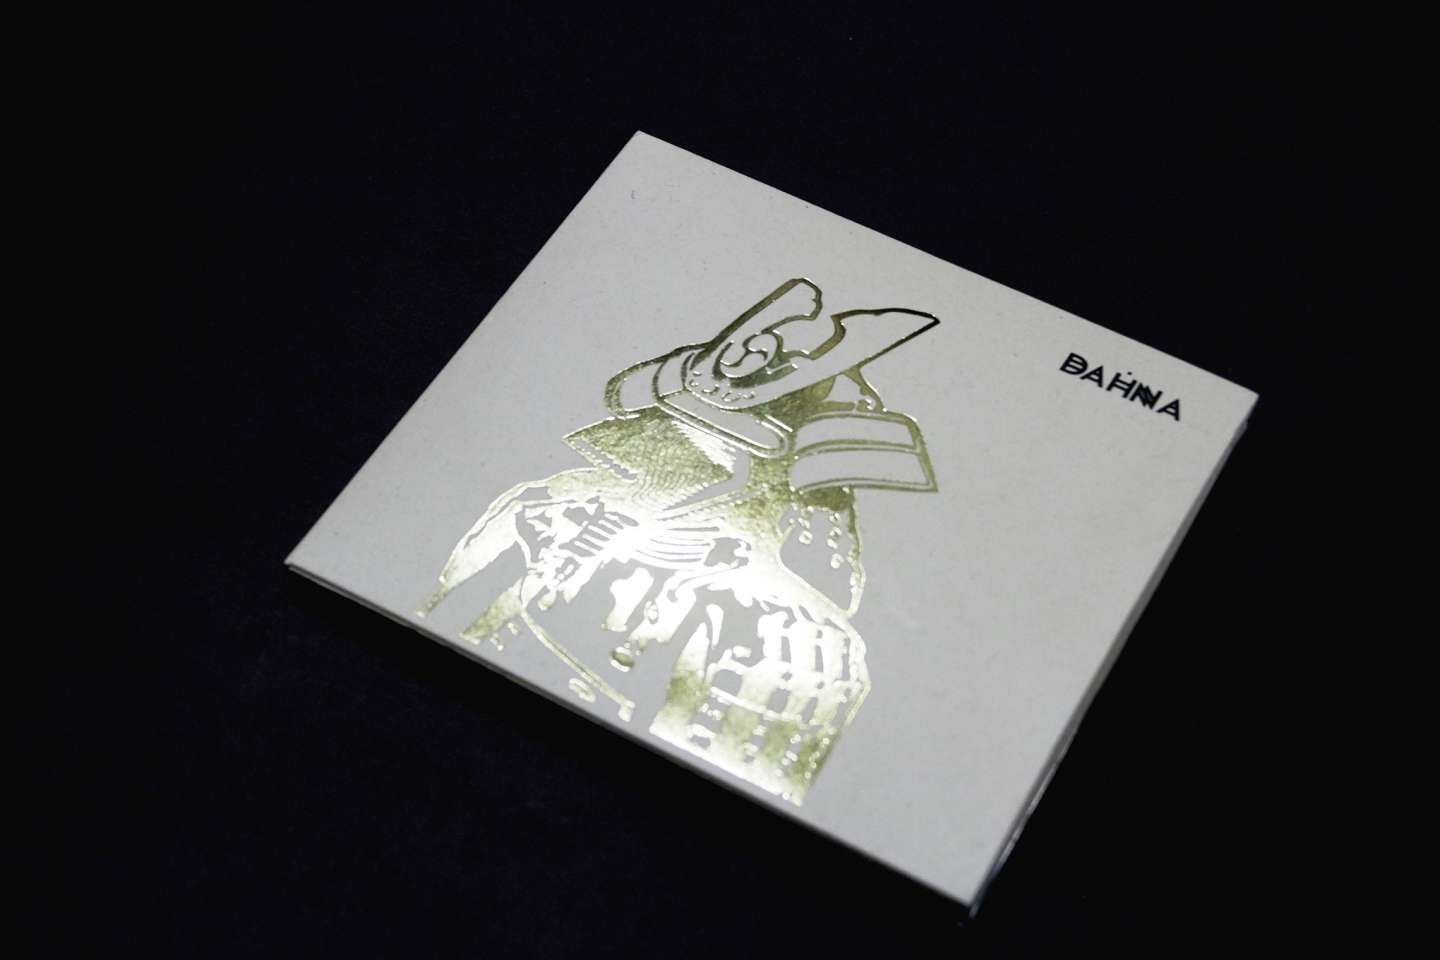 Dhana CD Album Case Design